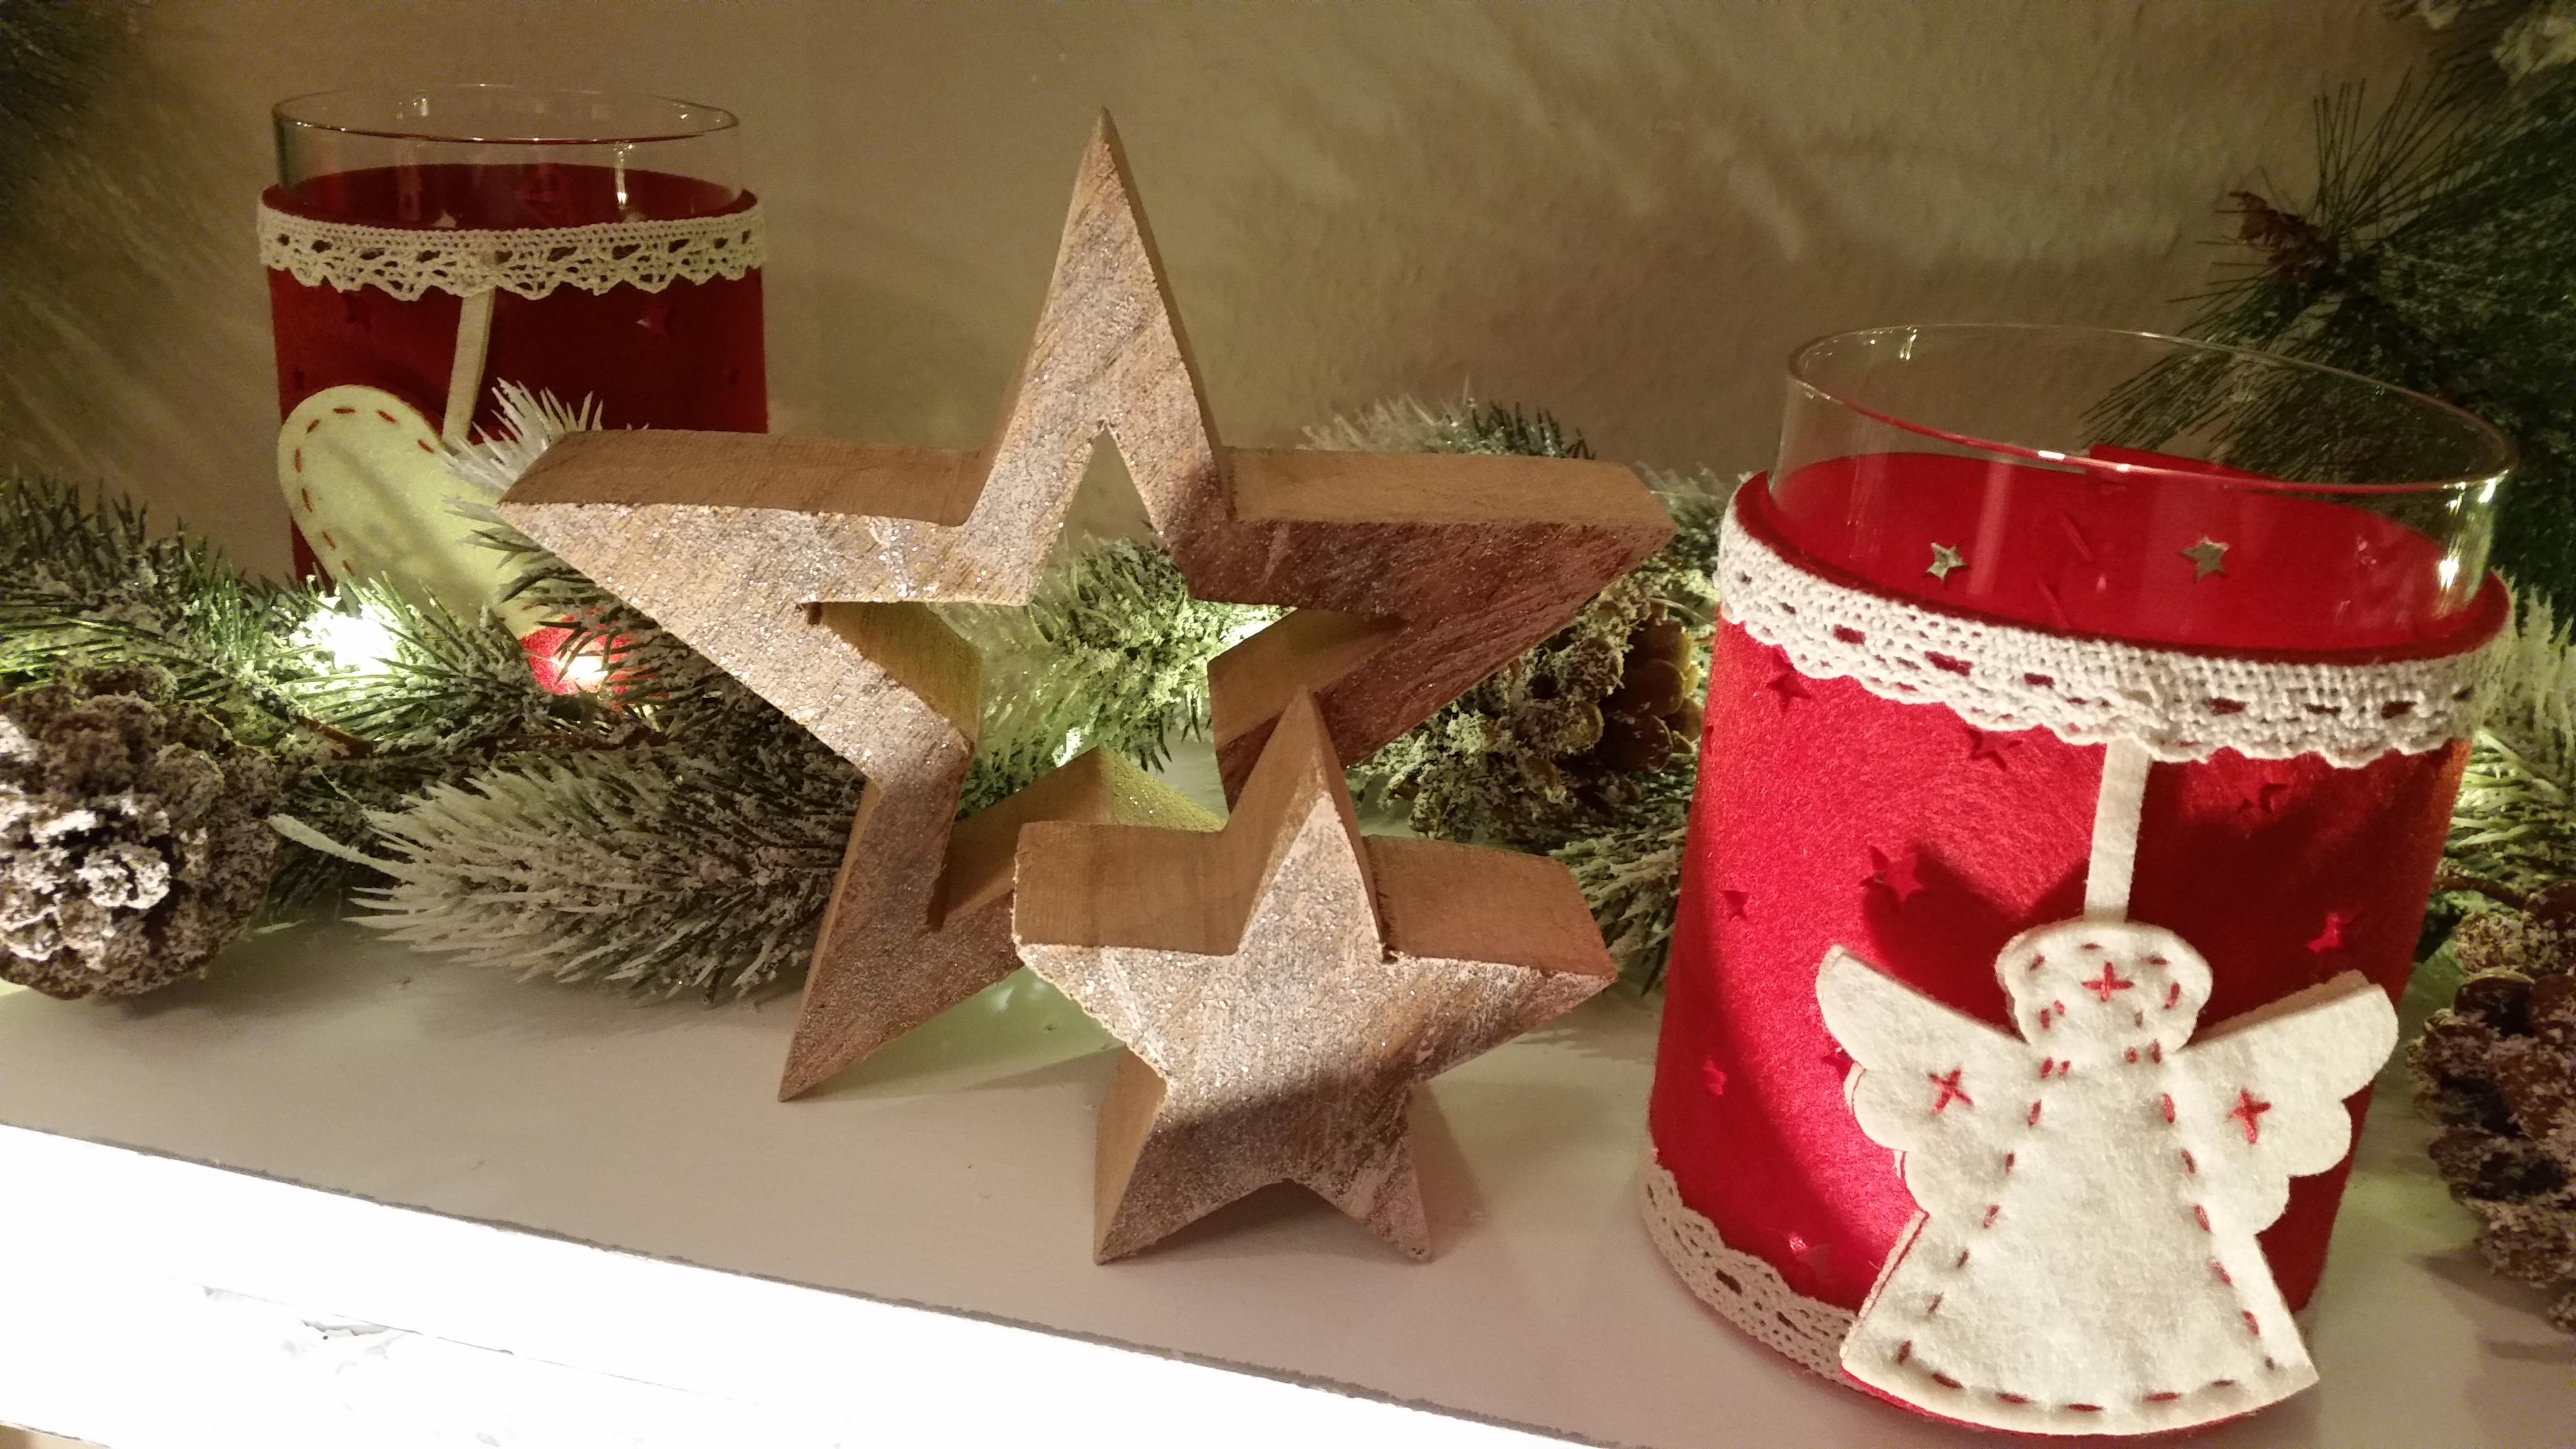 Weihnachten Stern - bald ist es soweit #beleuchtung #sterndeko ©Meinposten Dennis Porps